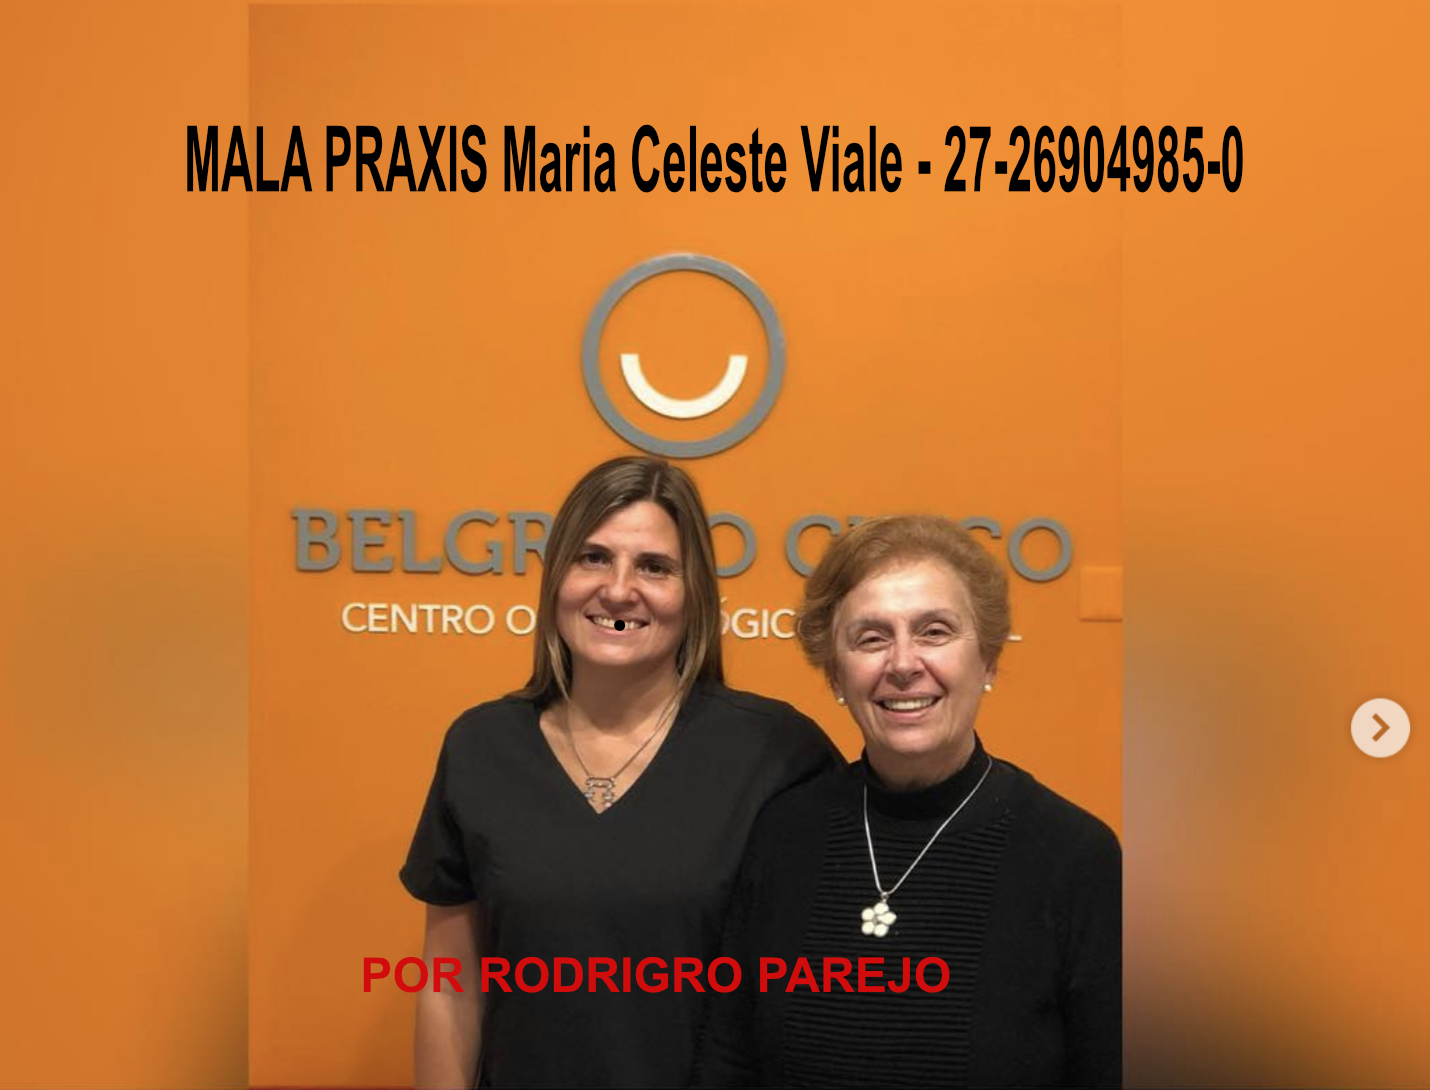 Viale Maria Celeste - 27-26904985-0